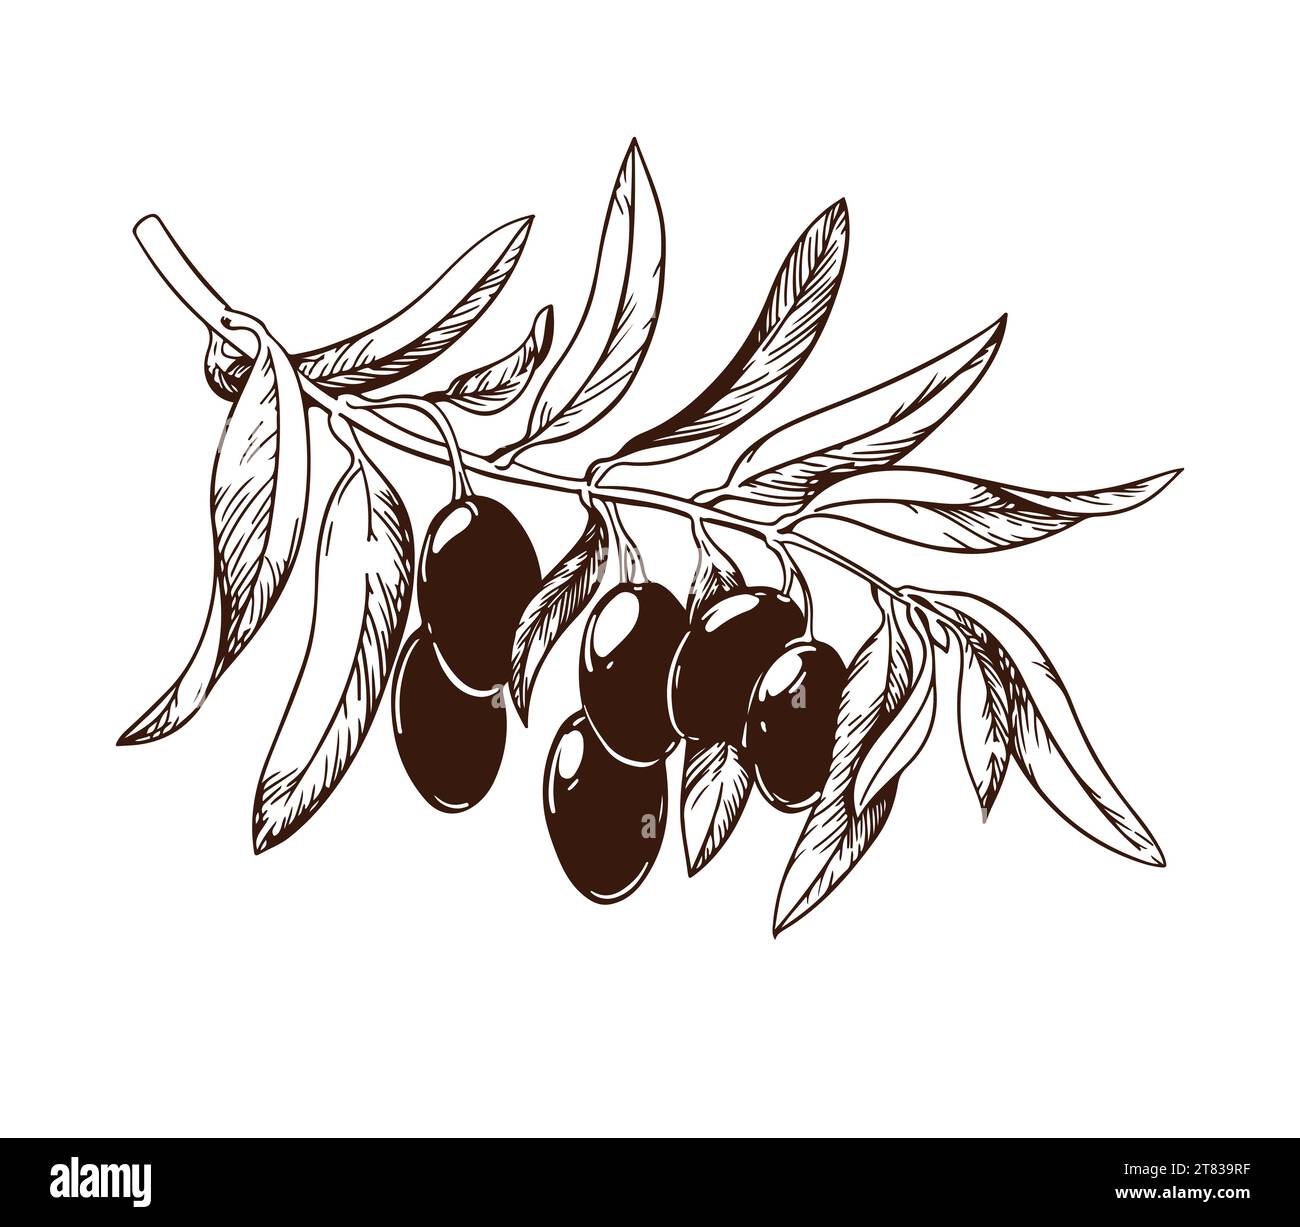 Branche d'olivier vintage vecteur isolé sur blanc. Illustrations dessinées à la main de branche avec des feuilles et des fruits mûrs dans le style de la gravure. Esquisse Illustration de Vecteur